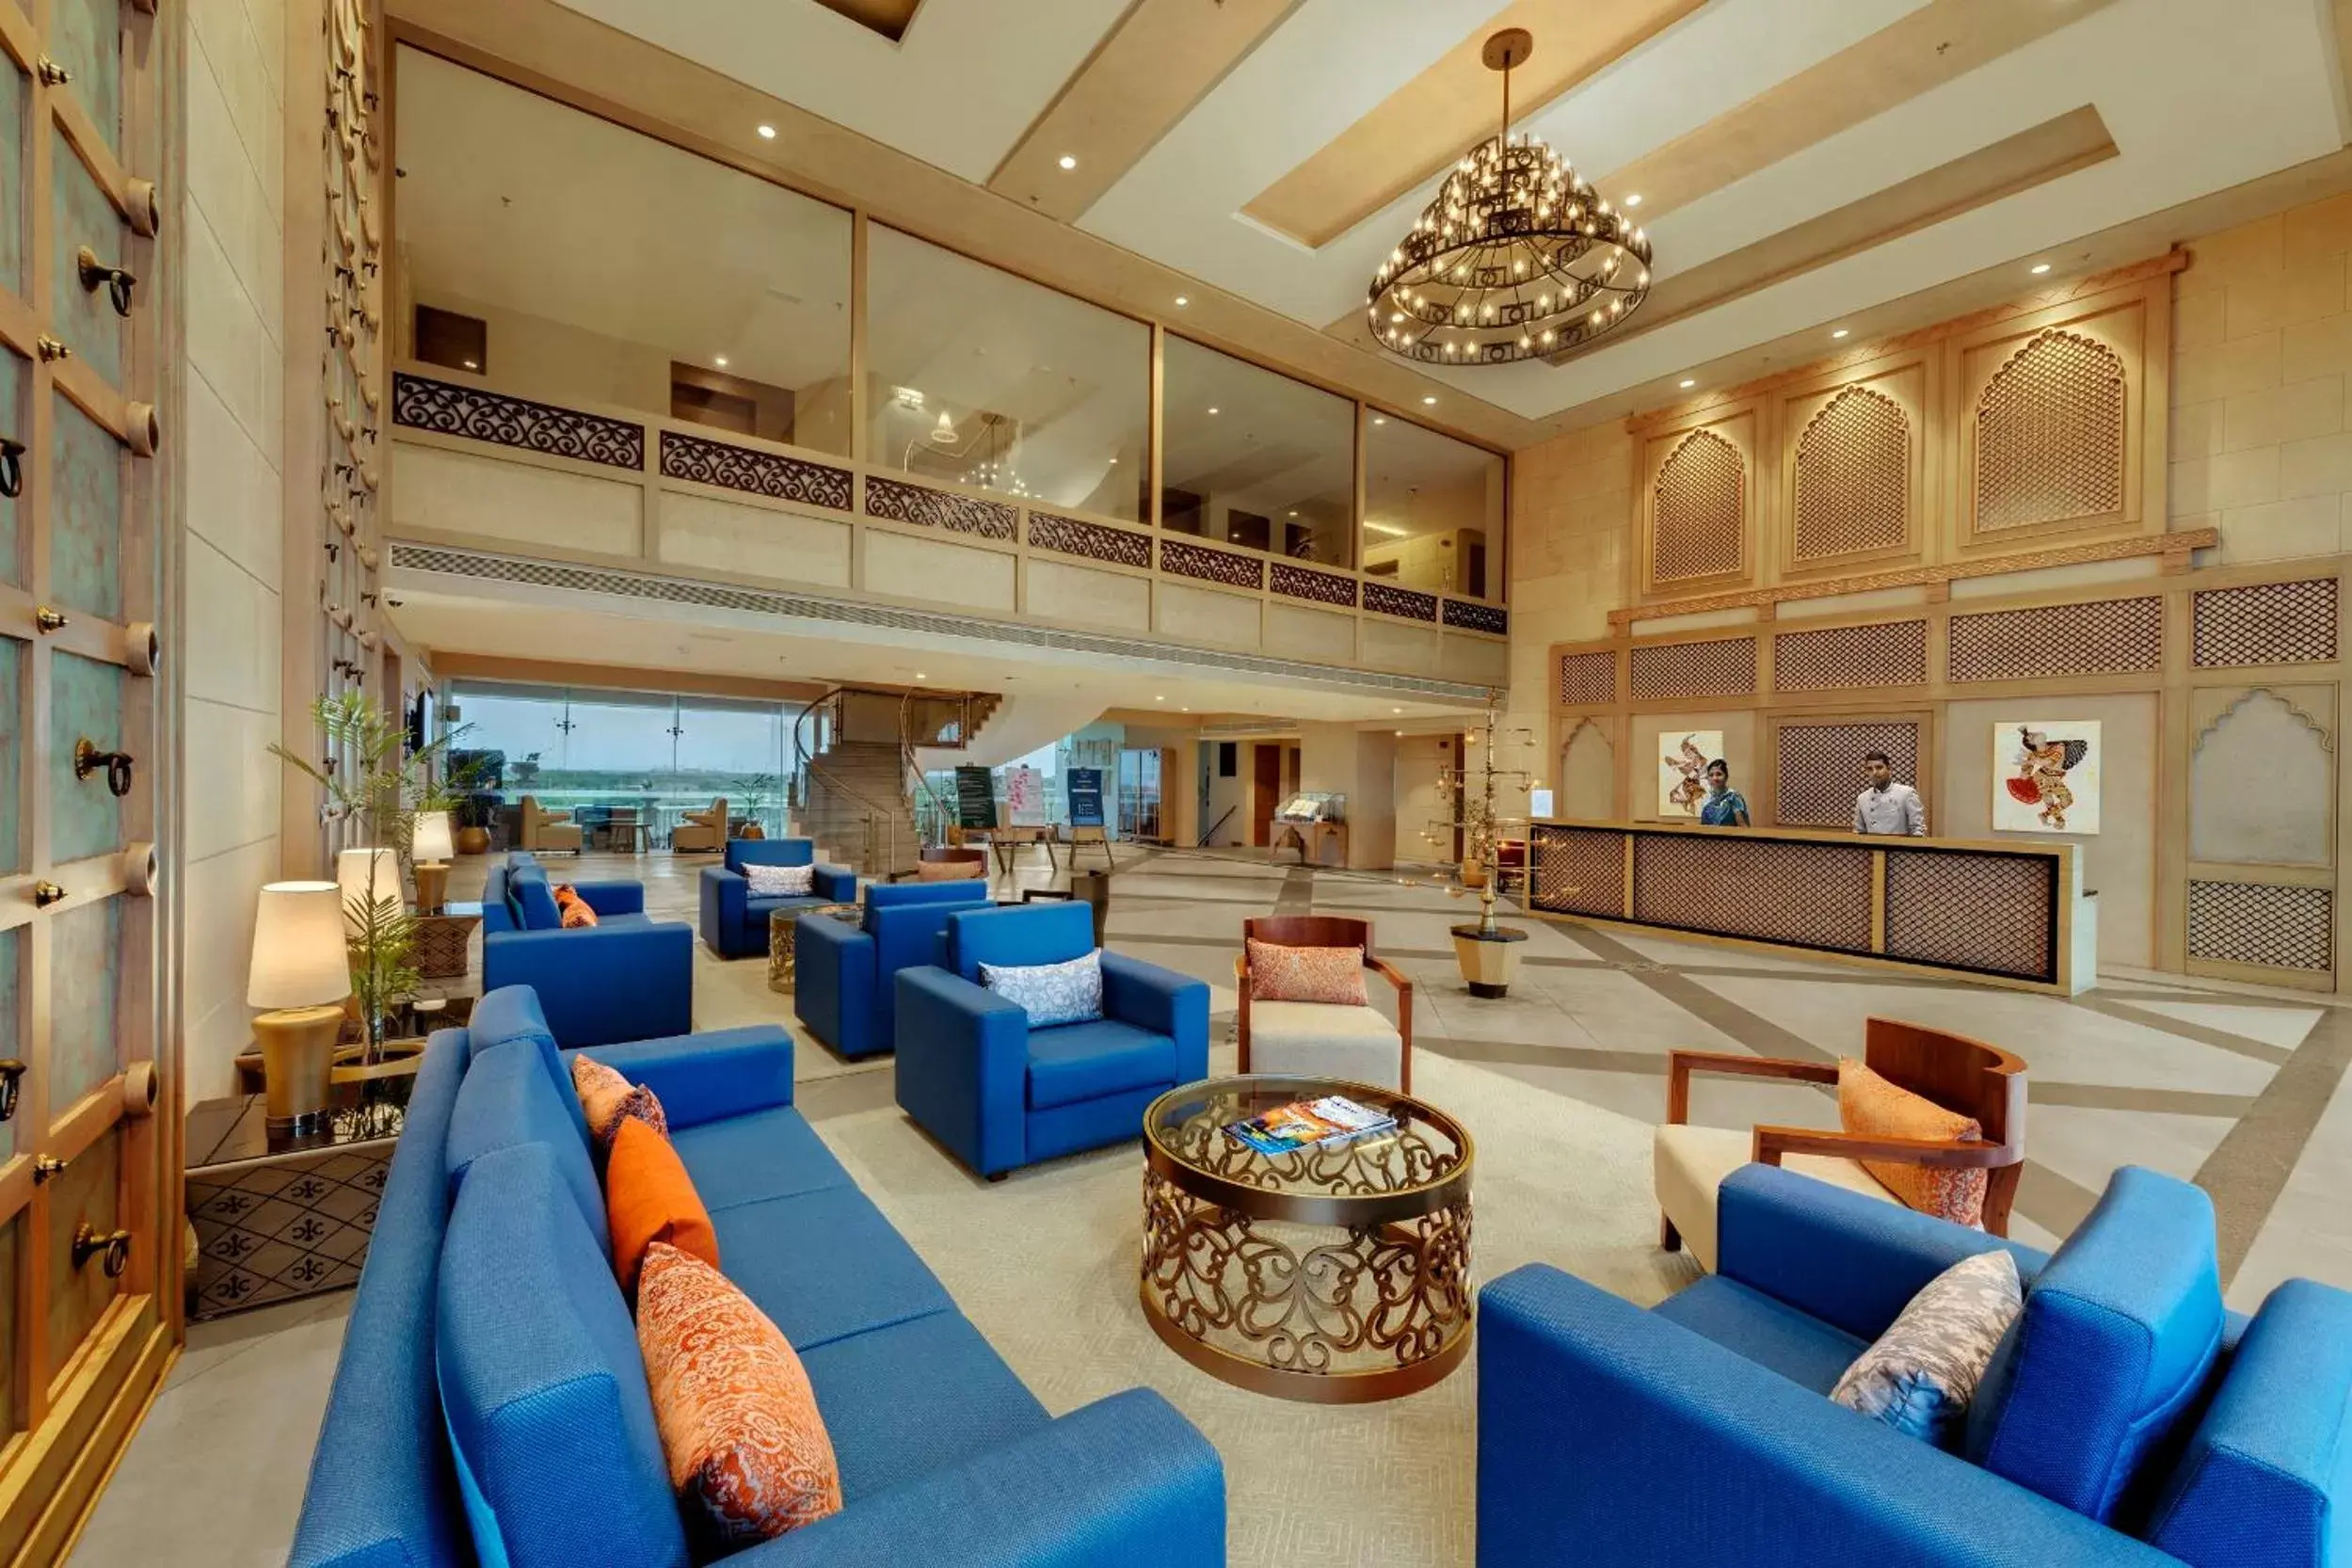 Lobby or reception, Lobby/Reception in The Fern Sattva Resort, Dwarka